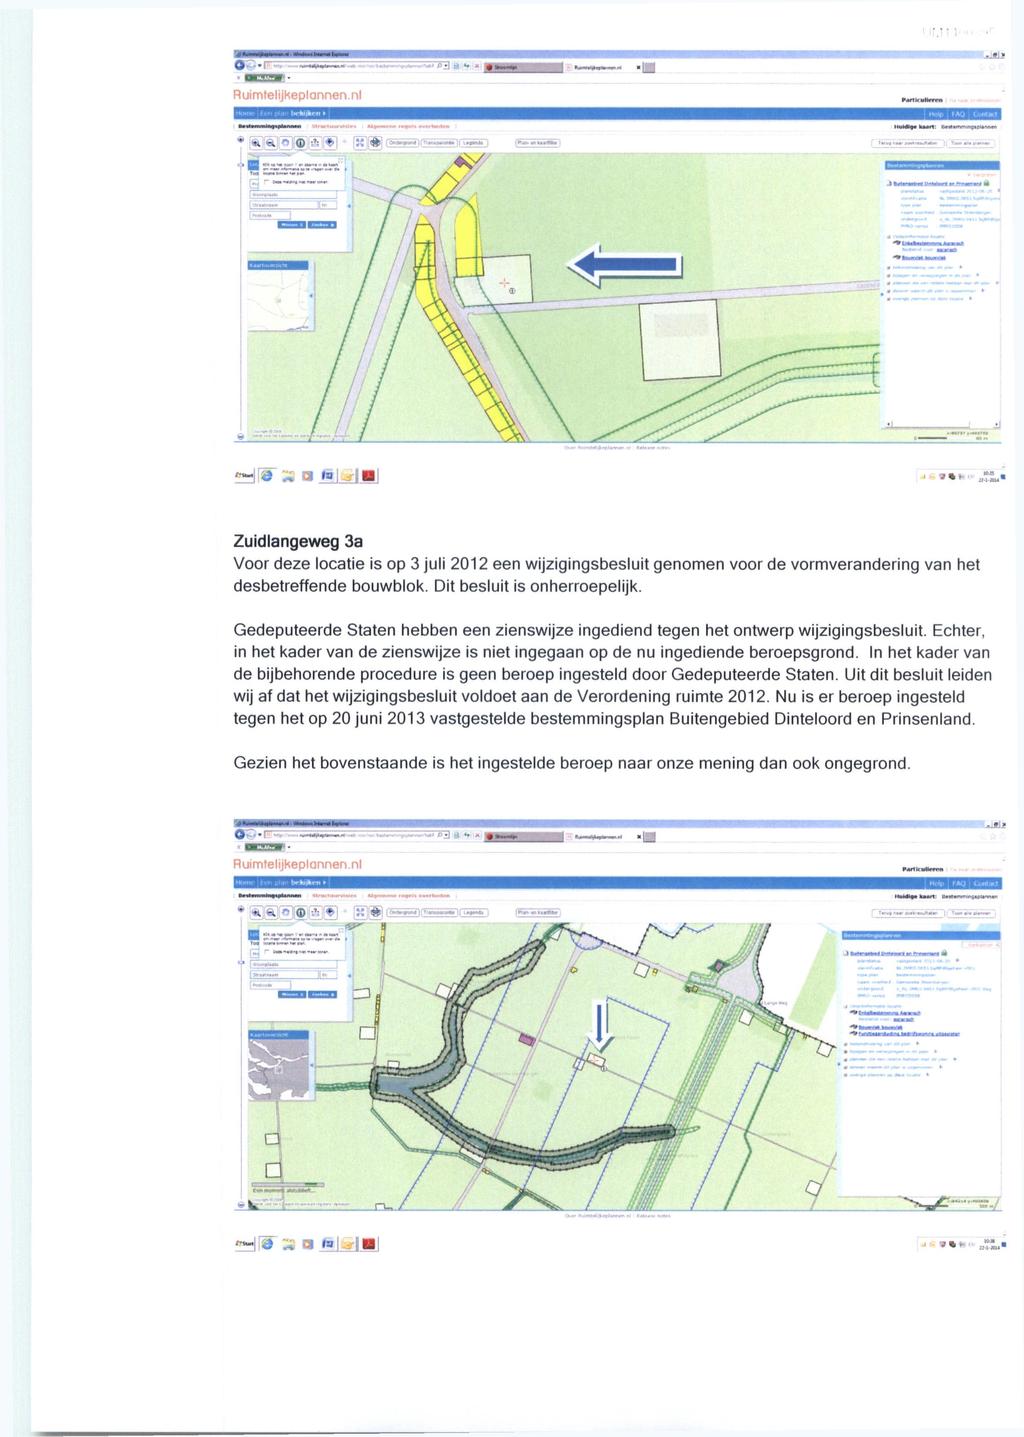 Rumteljkeplannen.nl 1 3 7 1! 1 HÍ9'» O hįjįbl ïî»» Zudlangeweg 3a Voor deze locate s op 3 jul 2012 een wjzgngsbeslut genomen voor de vormveranderng van het desbetreffende bouwblok.